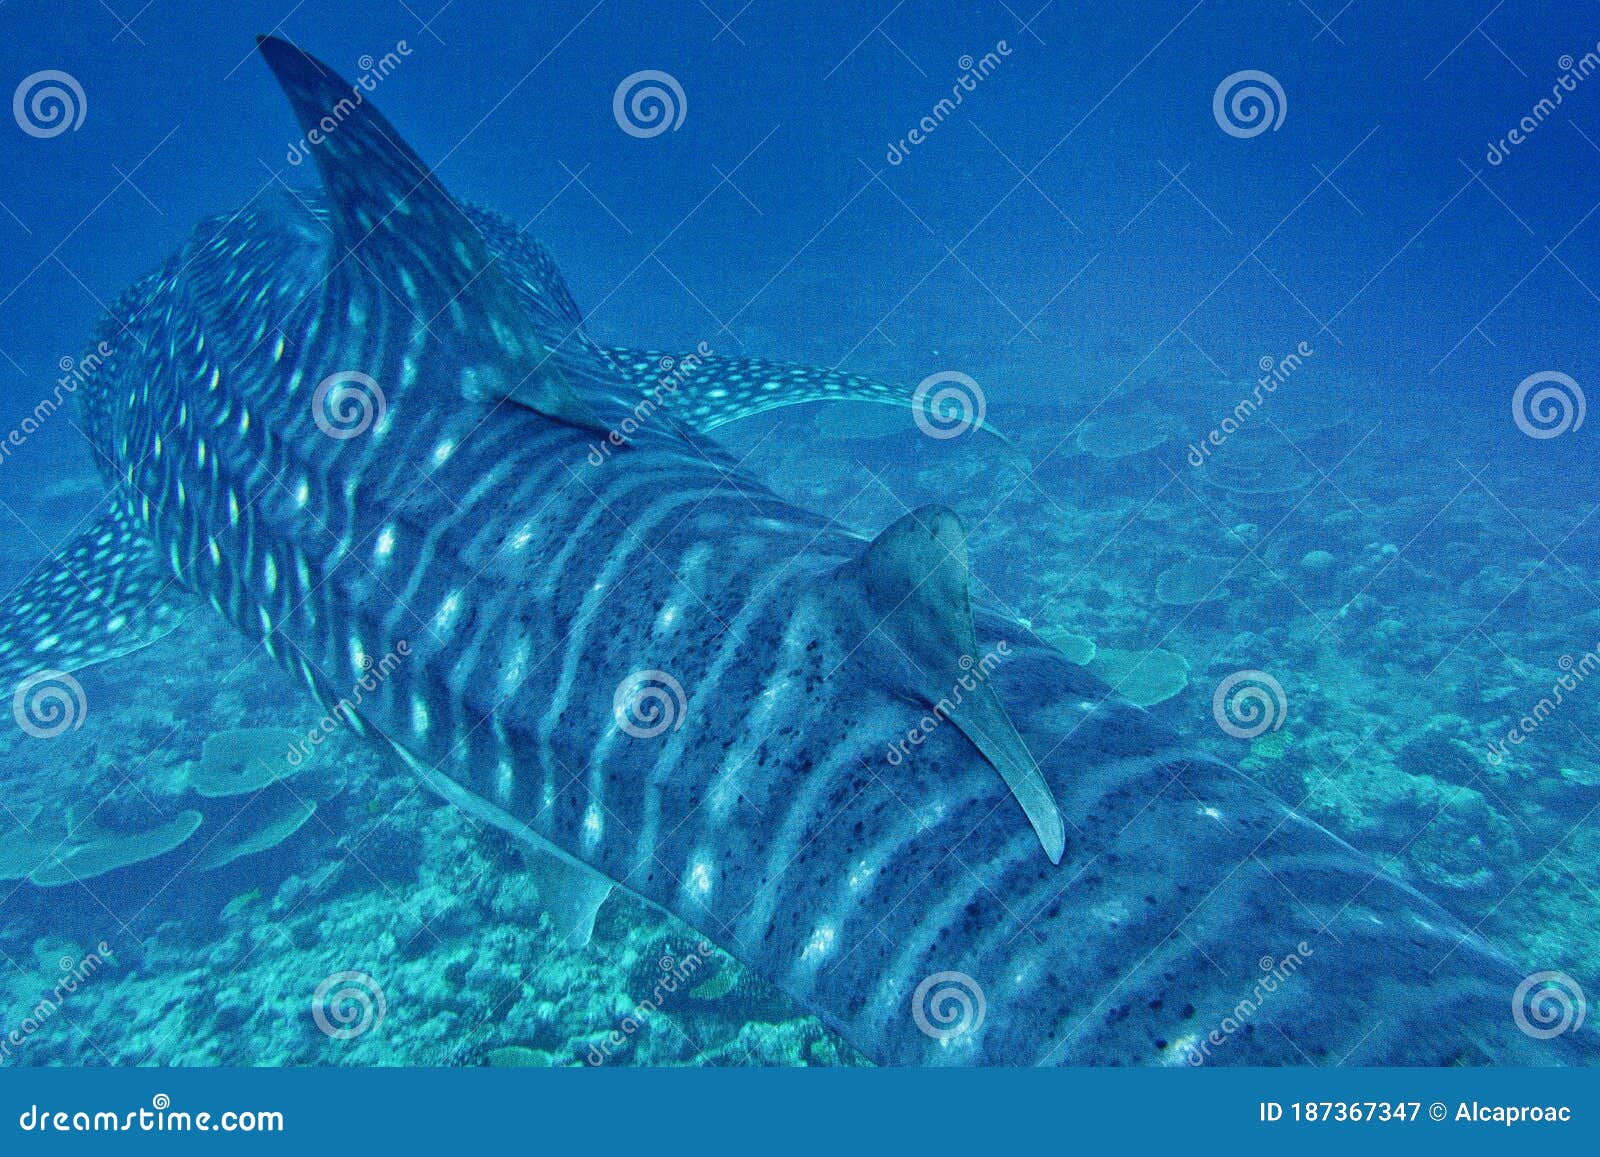 whale shark, rhincodon typus, south ari atoll, maldives